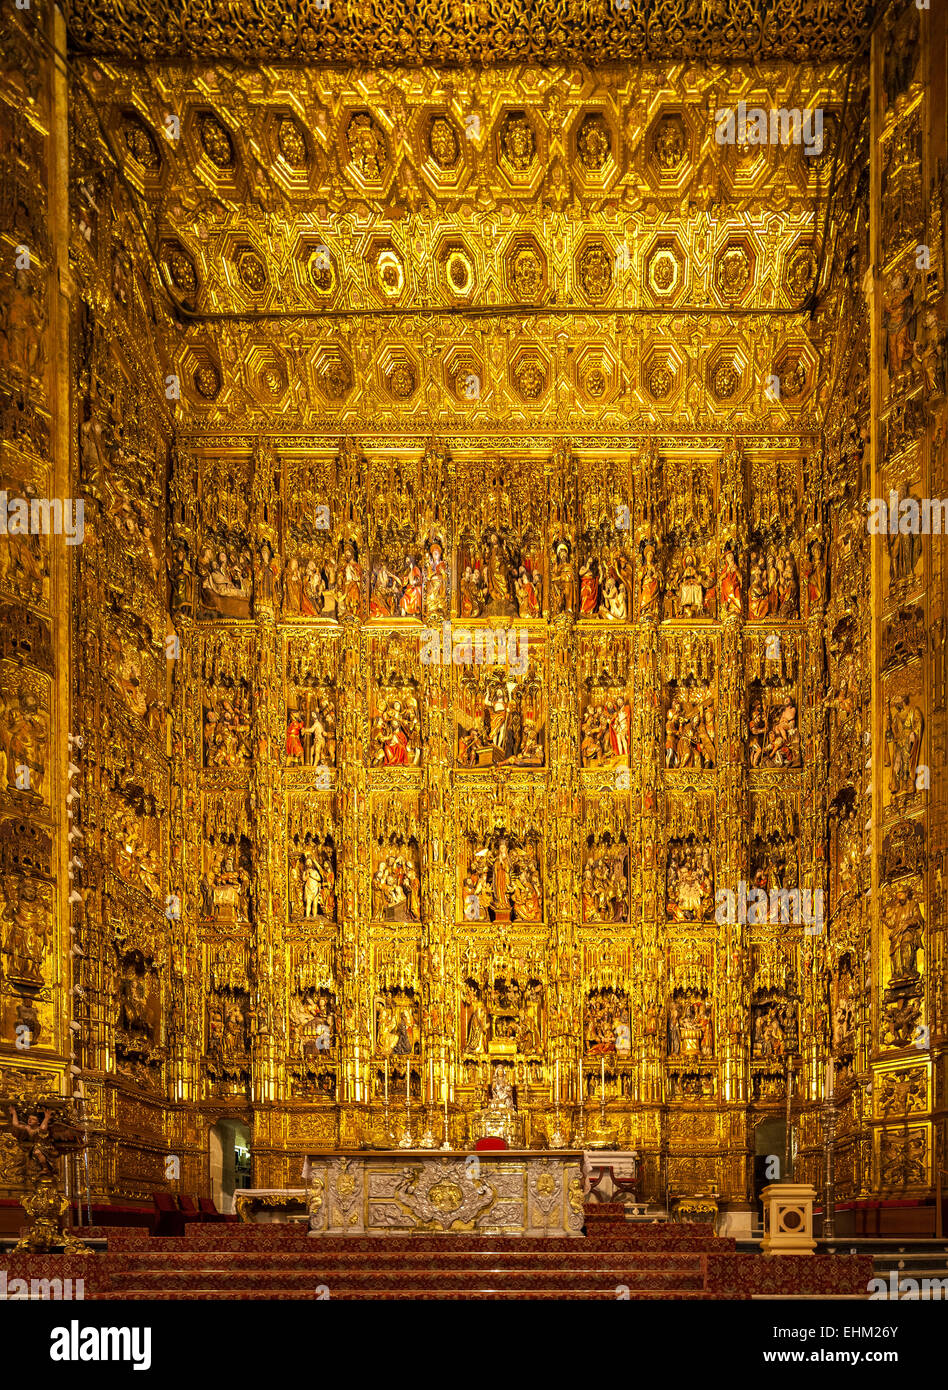 Le plus grand retable, retapo, reredos, dans le monde à la cathédrale de Séville, Catedral Séville Espagne. Banque D'Images